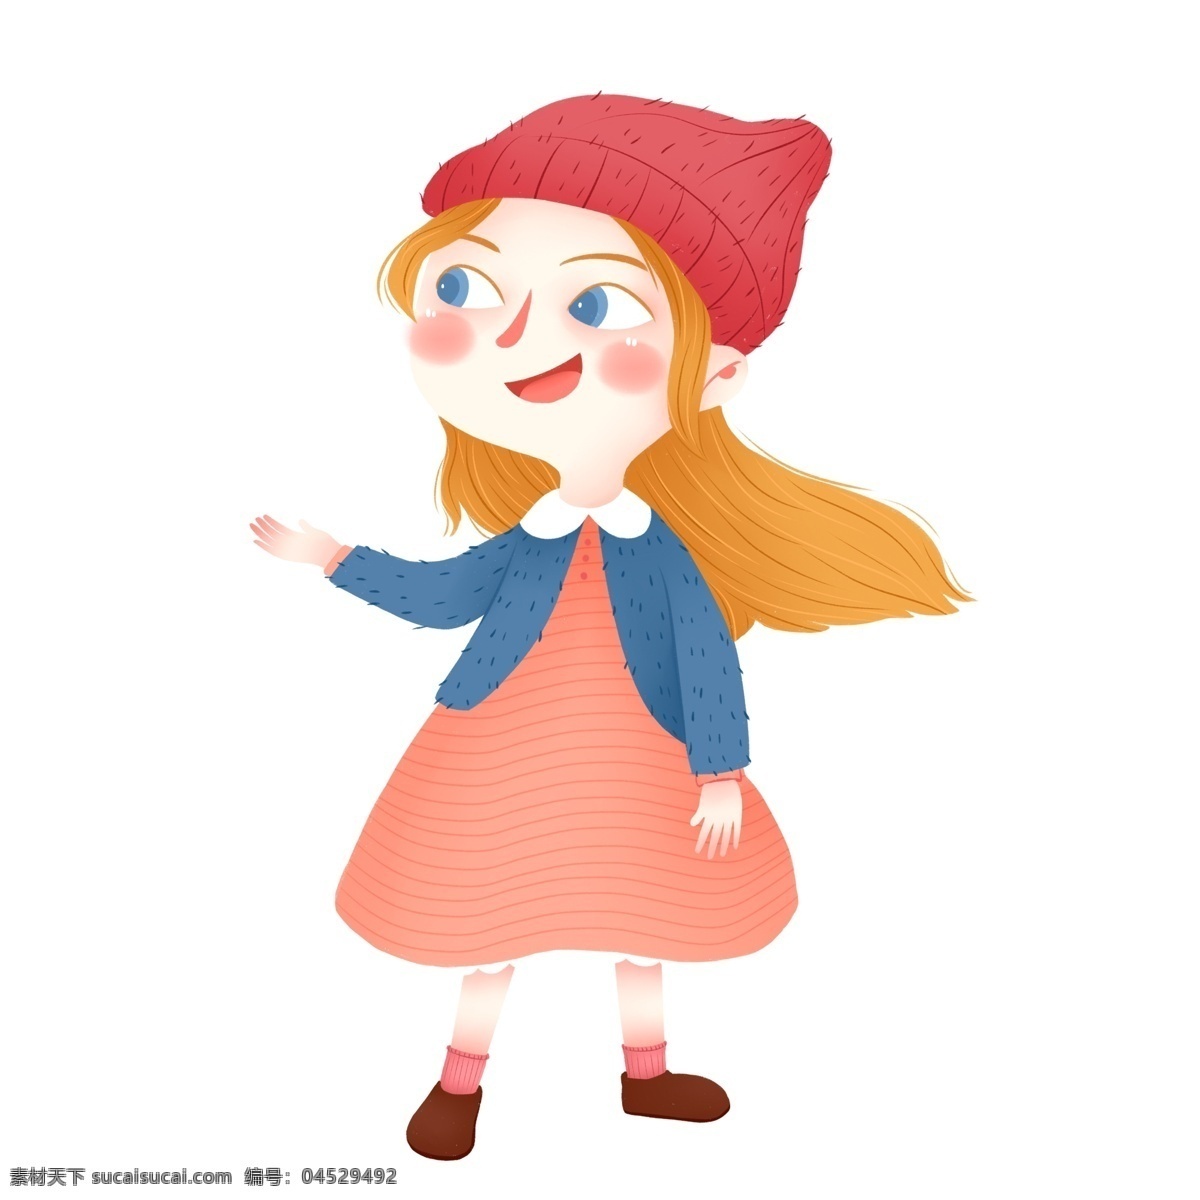 手绘 卡通 带 红帽子 女孩 原创 元素 童话 可爱 设计元素 小红帽 黄头发 原创元素